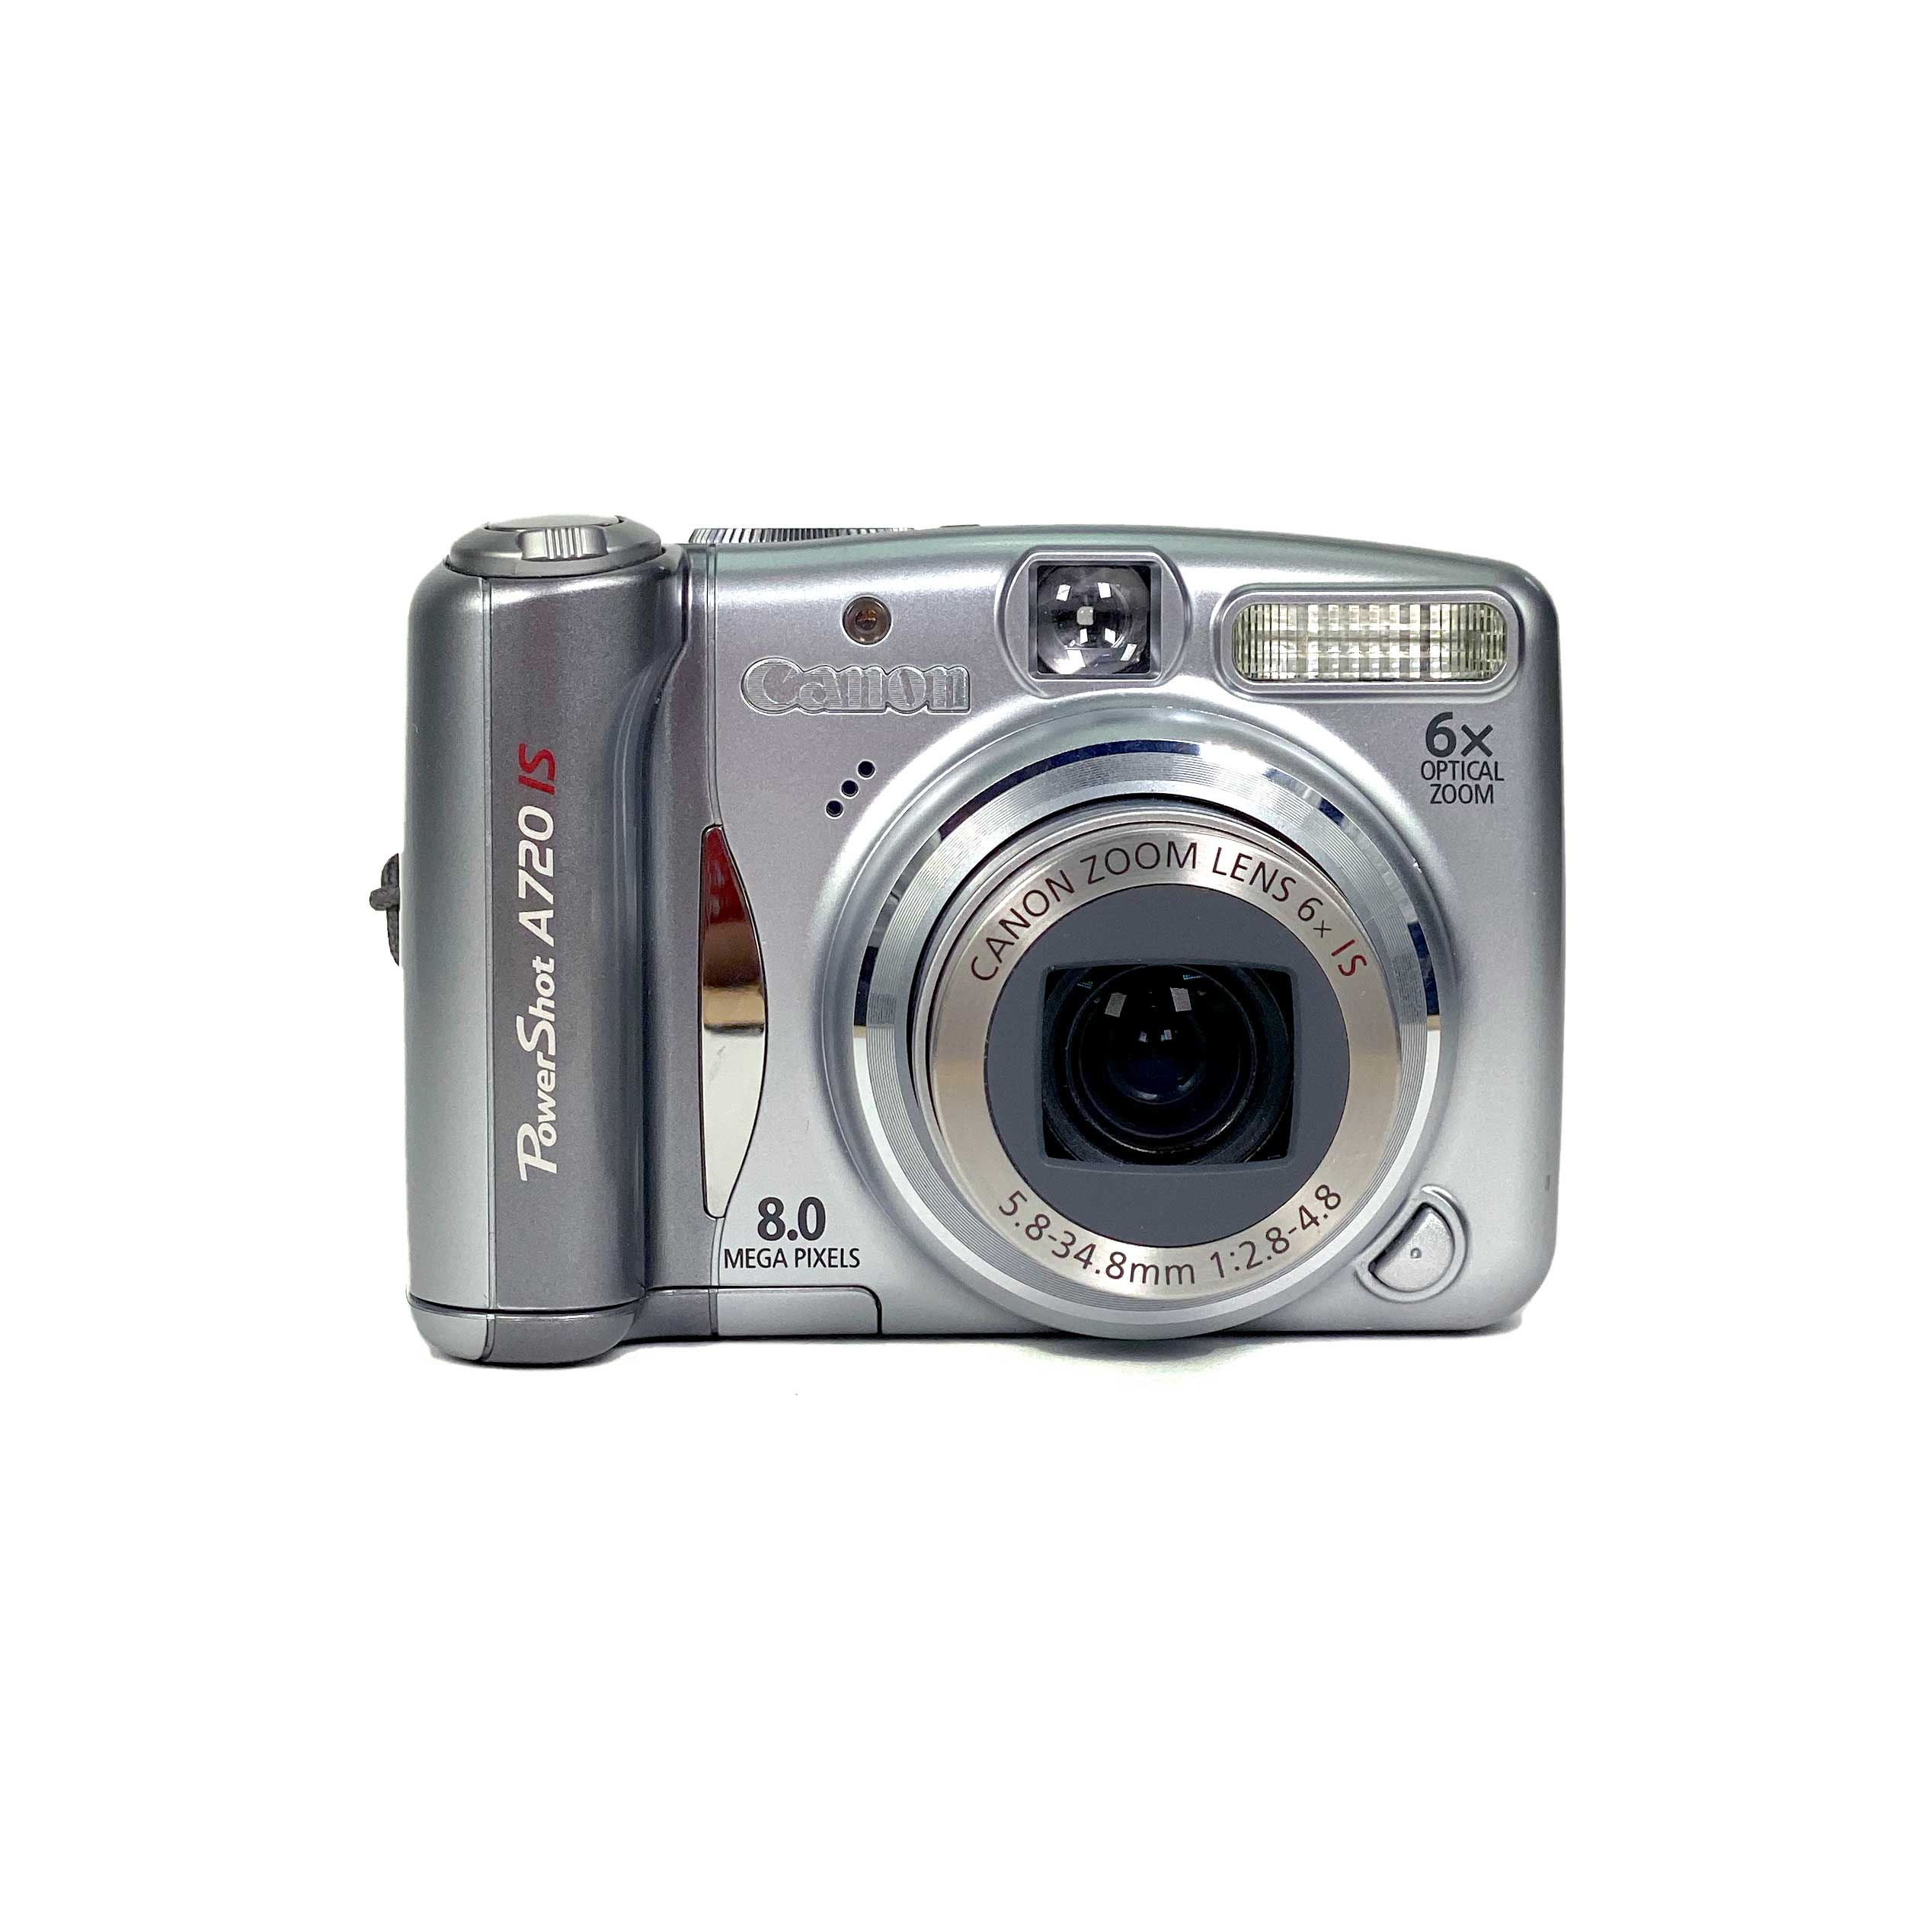 買蔵交換元箱付き キヤノン PowerShot A720 IS デジタルカメラ